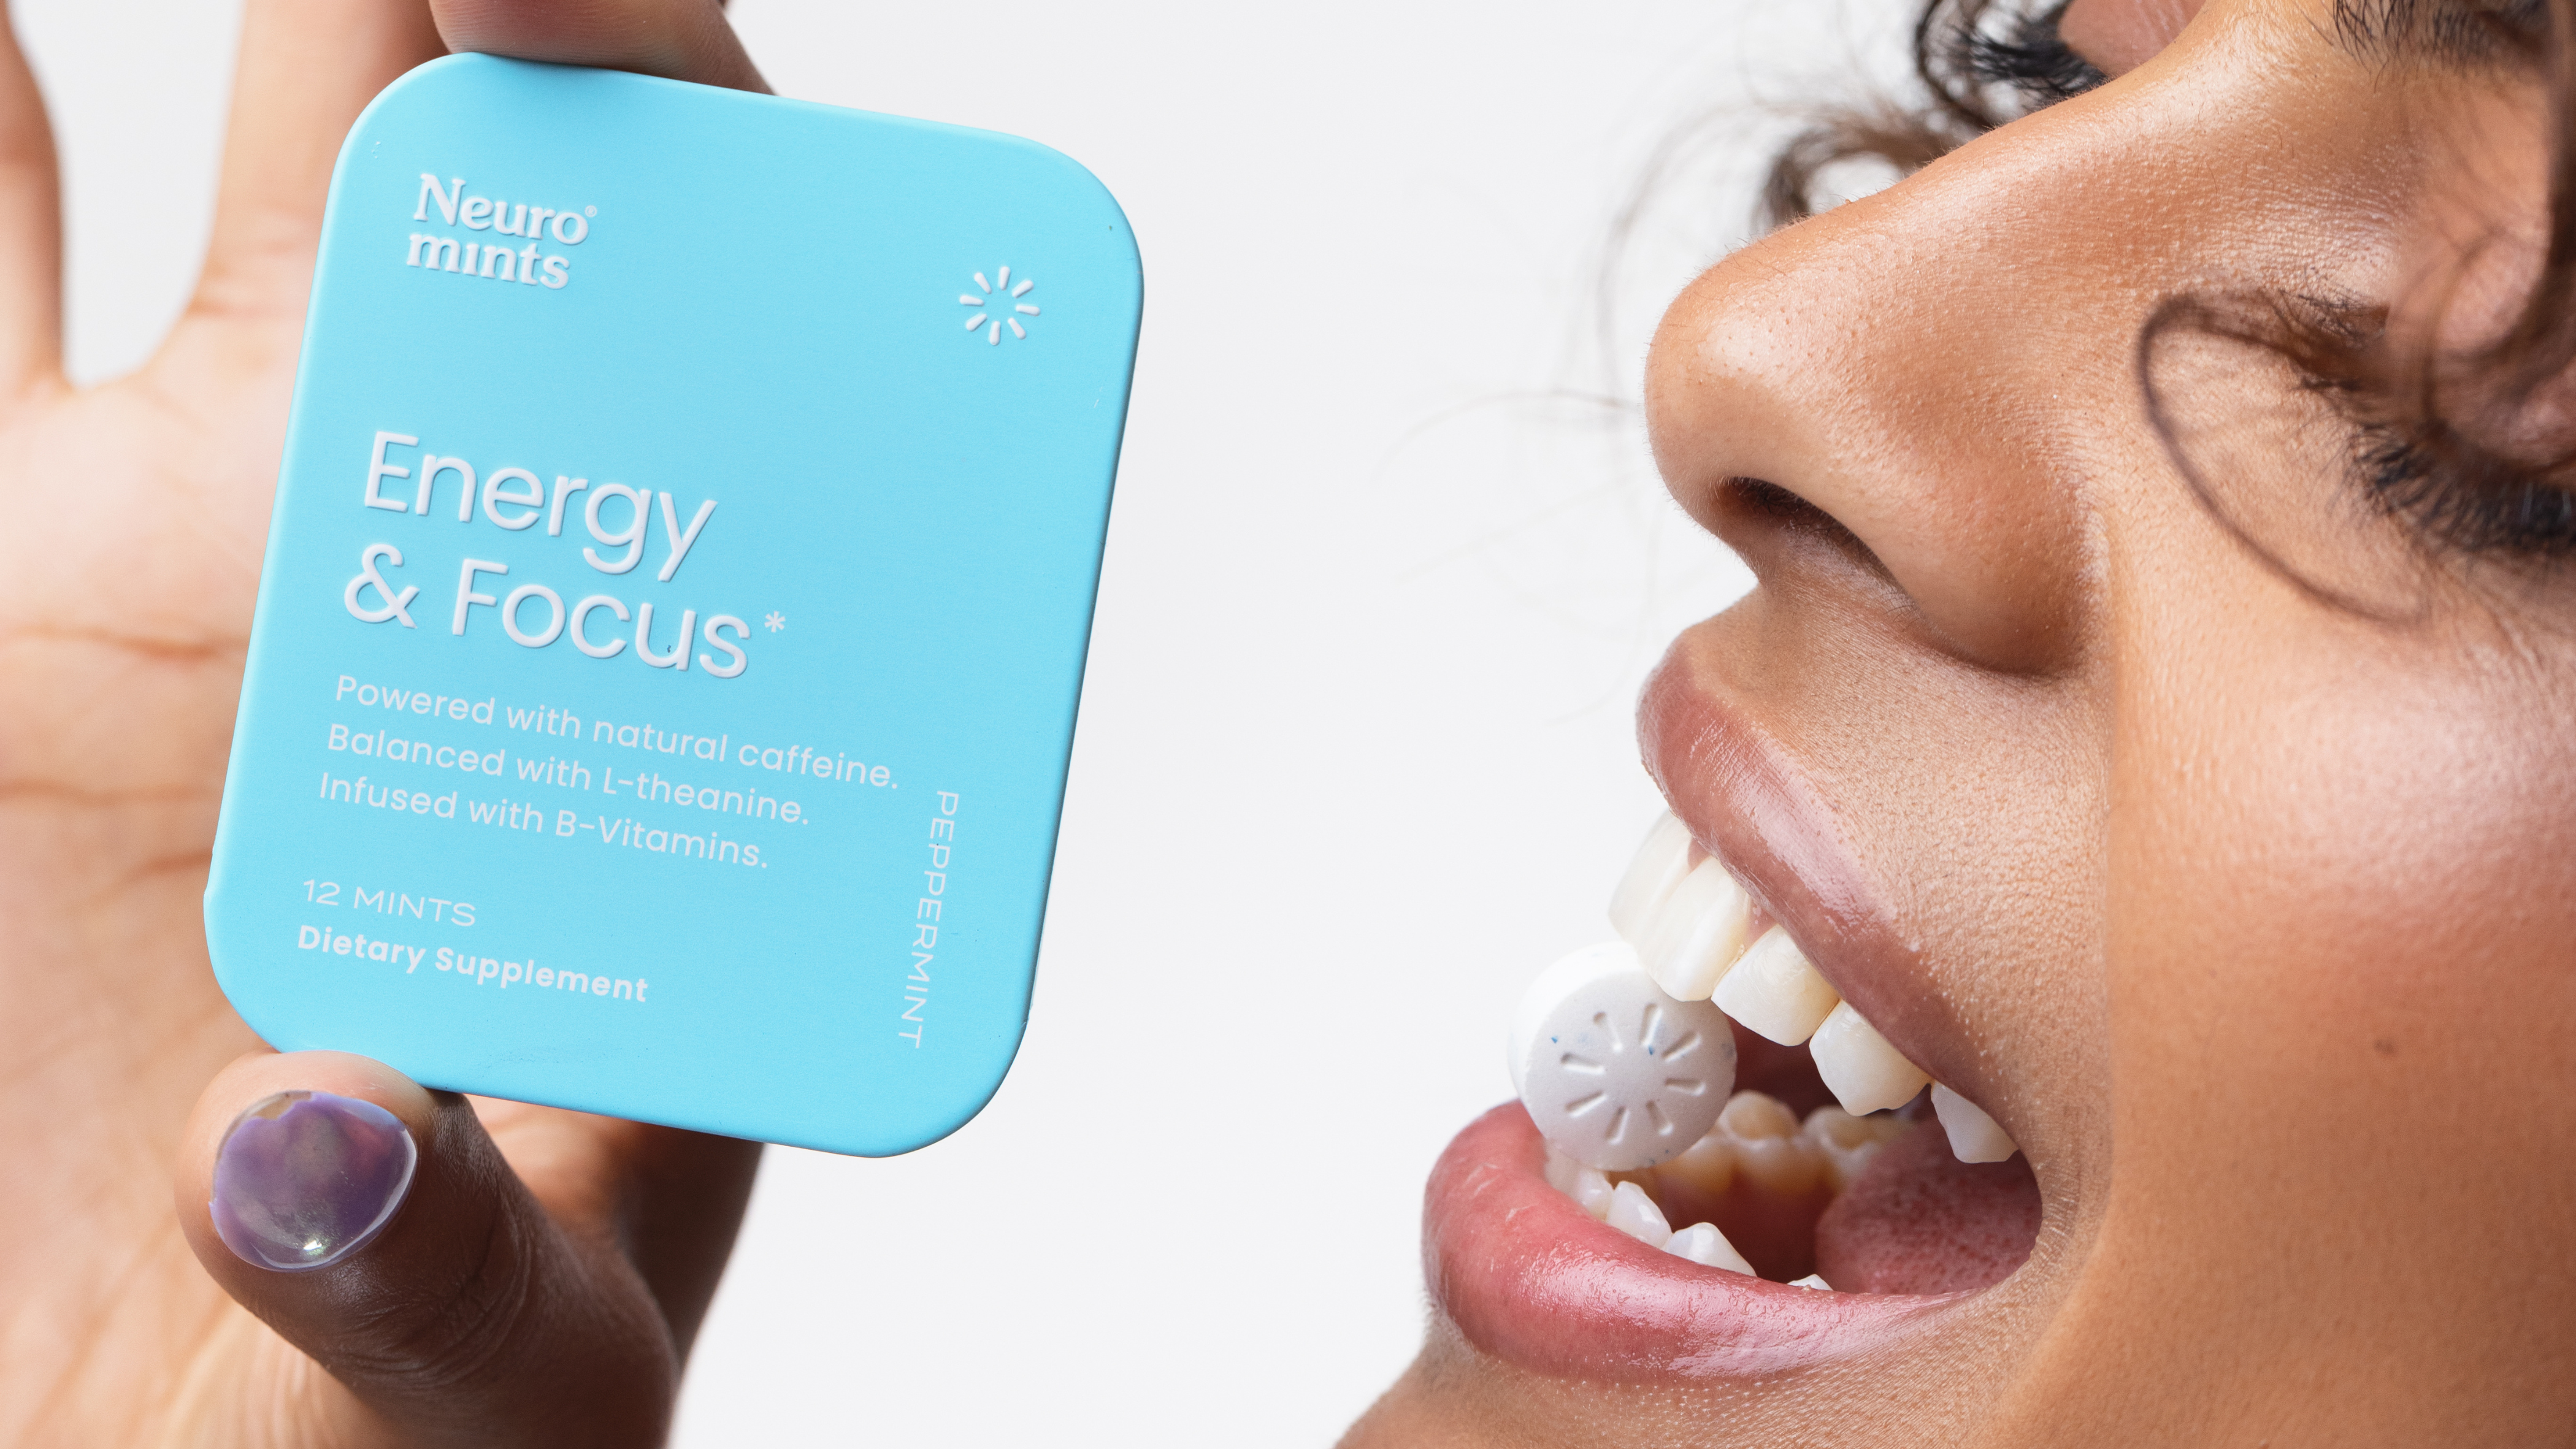 Neuro Gum Energy & Focus